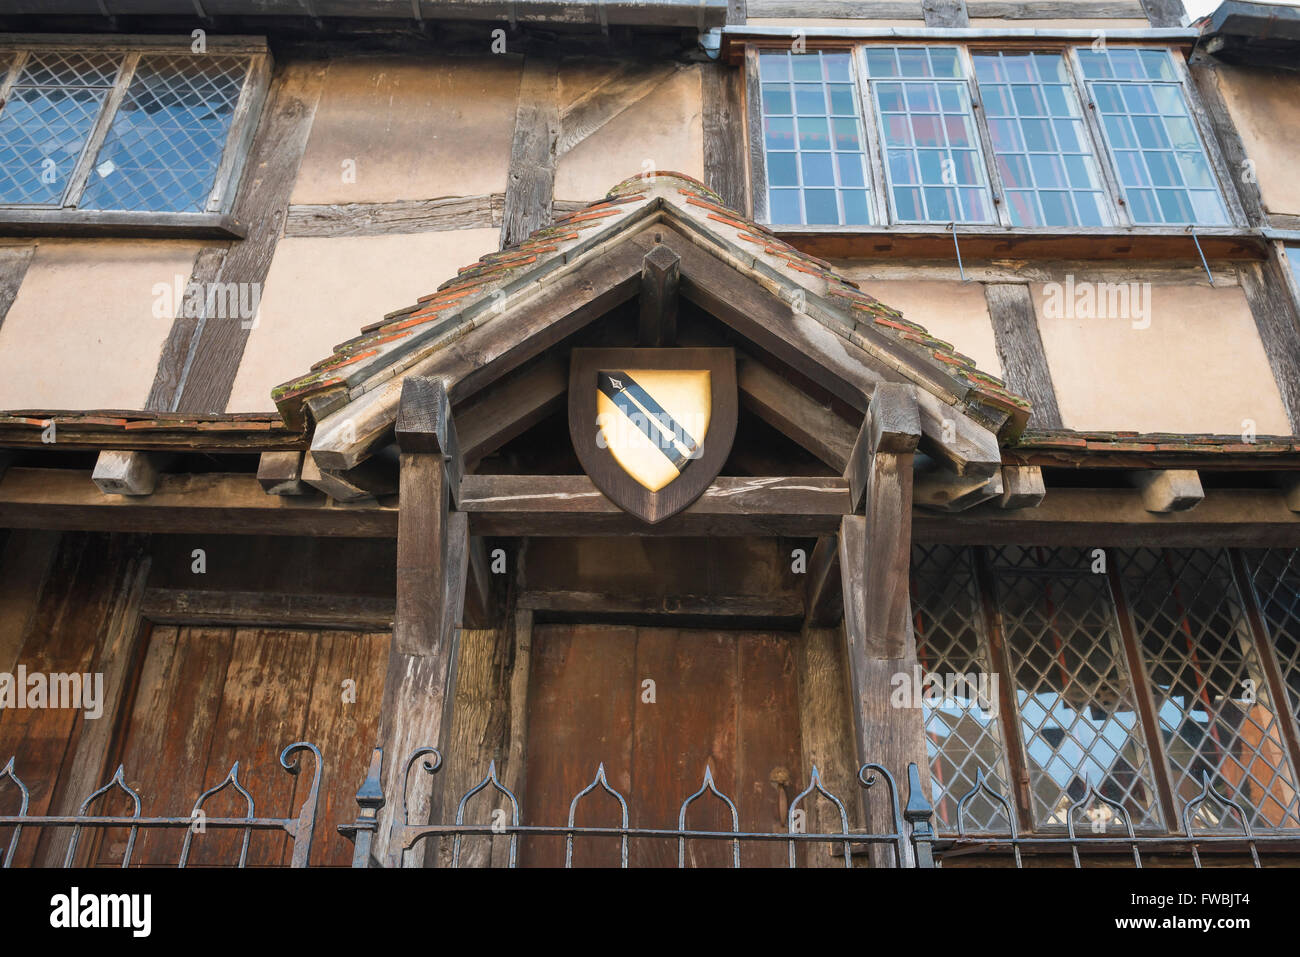 Shakespeare-Wappen, Blick auf das Wappen der Shakespeare-Familie auf der Veranda von Shakespeares Haus in der Henley Street, Stratford Upon Avon, England. Stockfoto